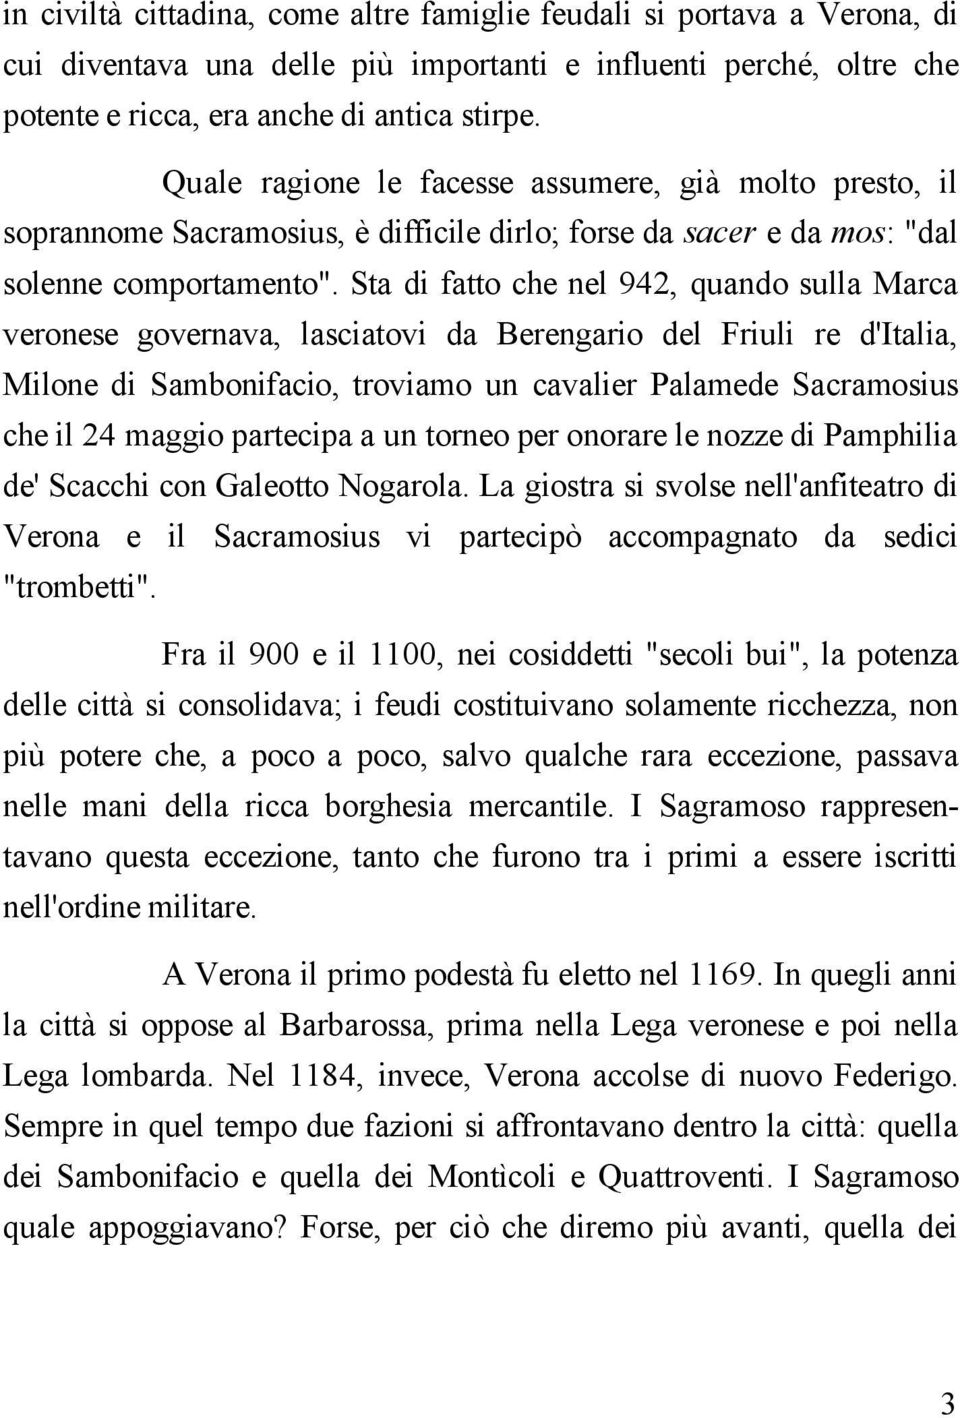 Sta di fatto che nel 942, quando sulla Marca veronese governava, lasciatovi da Berengario del Friuli re d'italia, Milone di Sambonifacio, troviamo un cavalier Palamede Sacramosius che il 24 maggio